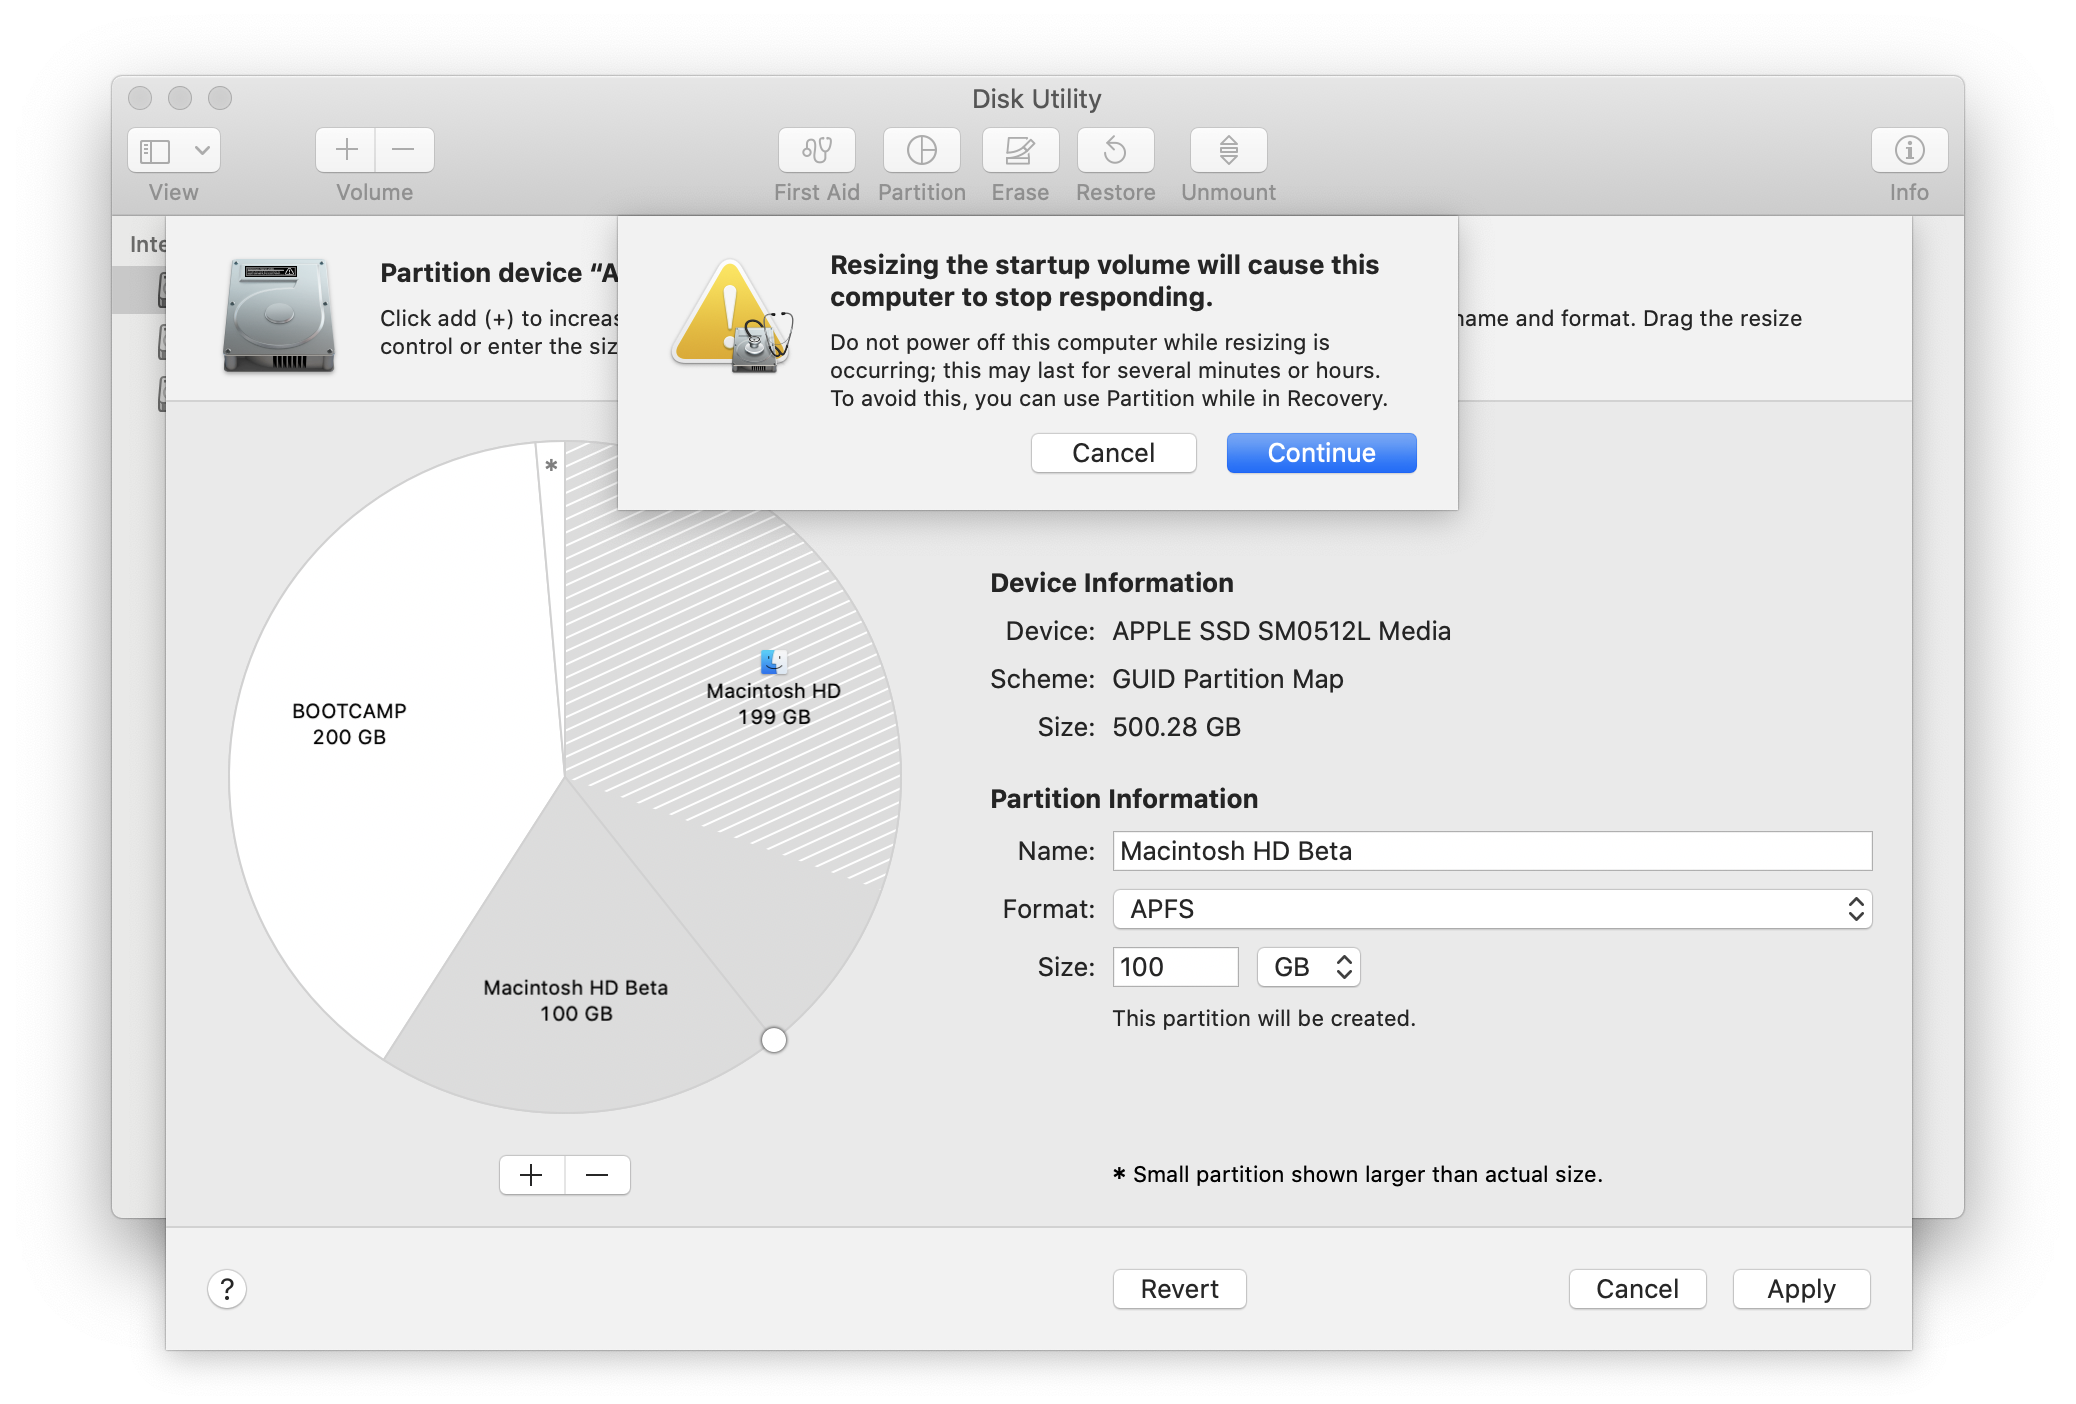 Screenshot of Disk Utility app